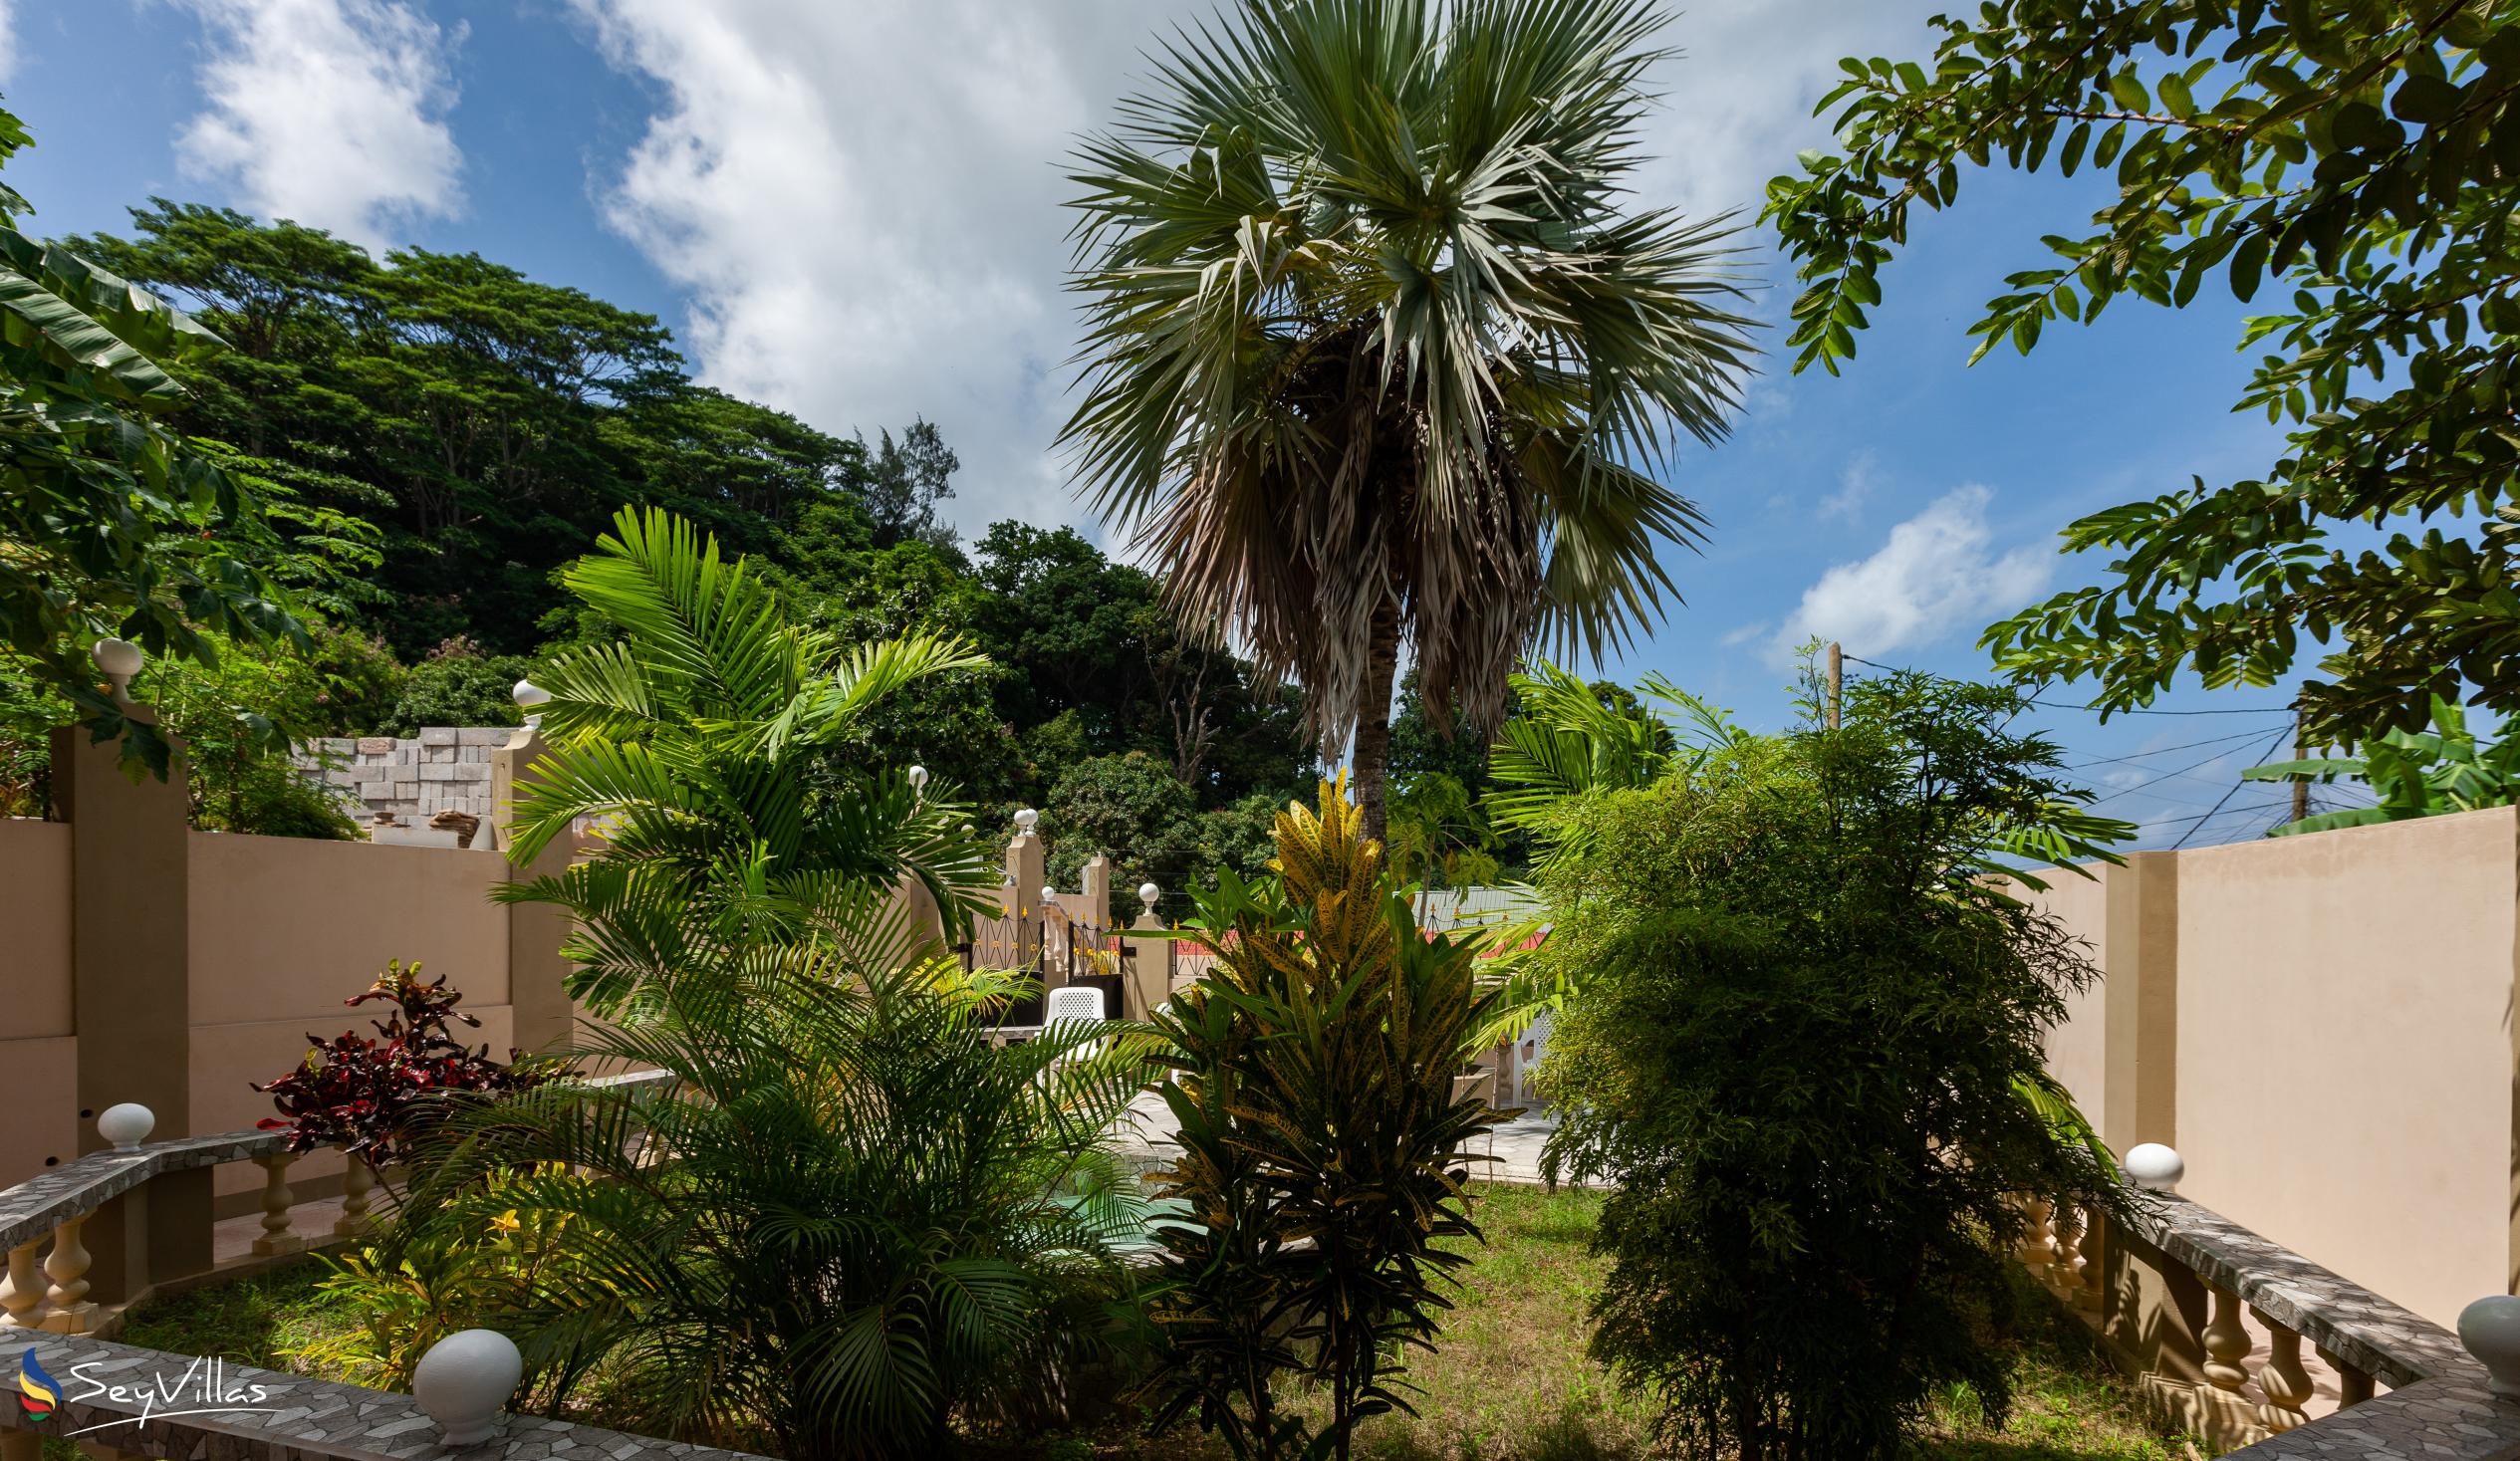 Foto 17: La Residence d'Almee - Aussenbereich - Praslin (Seychellen)